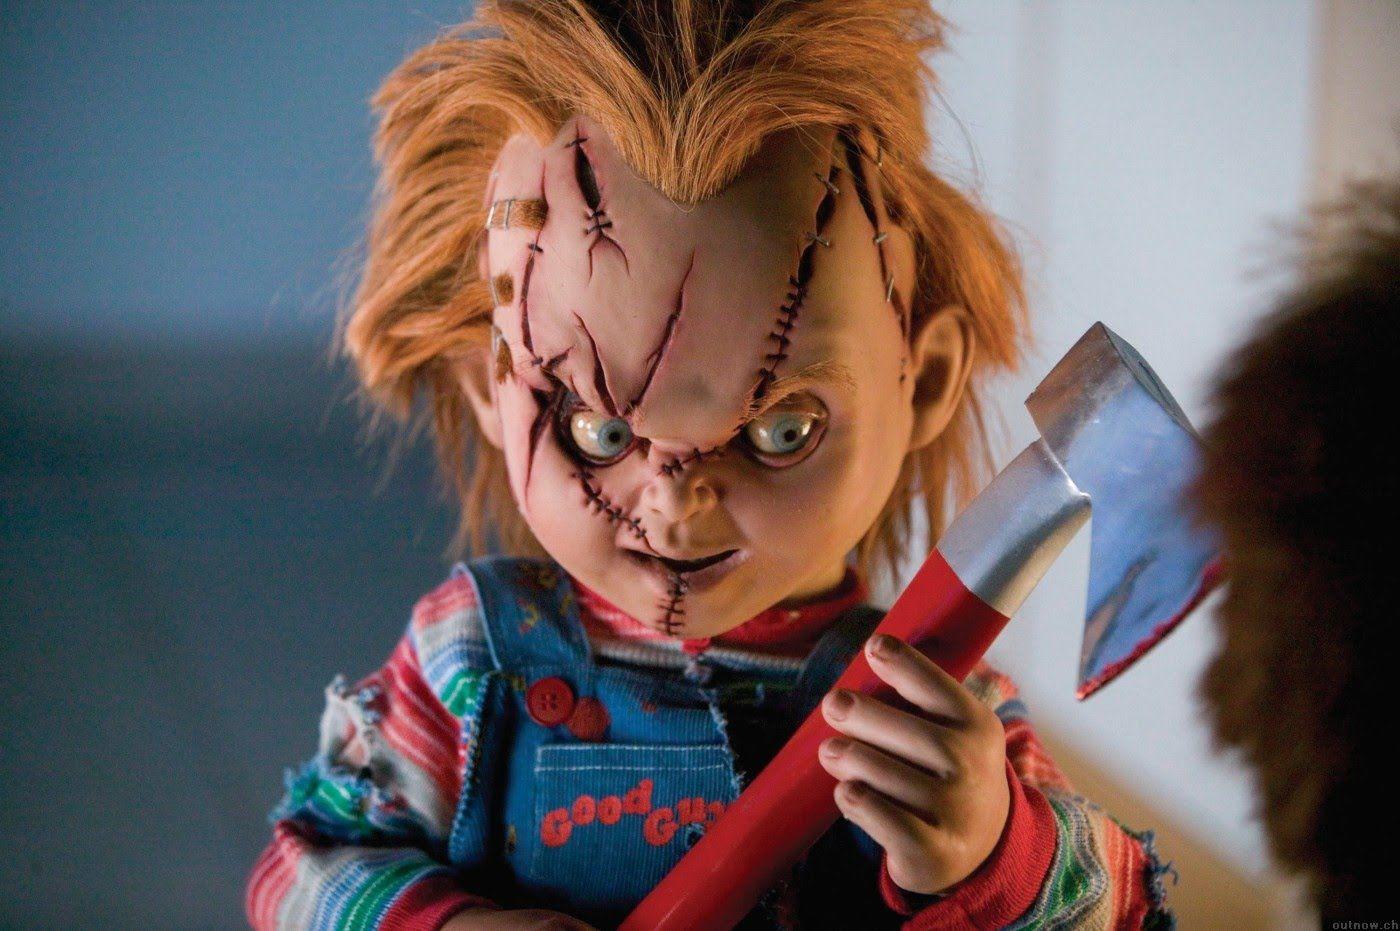 Chucky Prank: Chucky doll Curse of Chucky Videos Scary Prank Ever